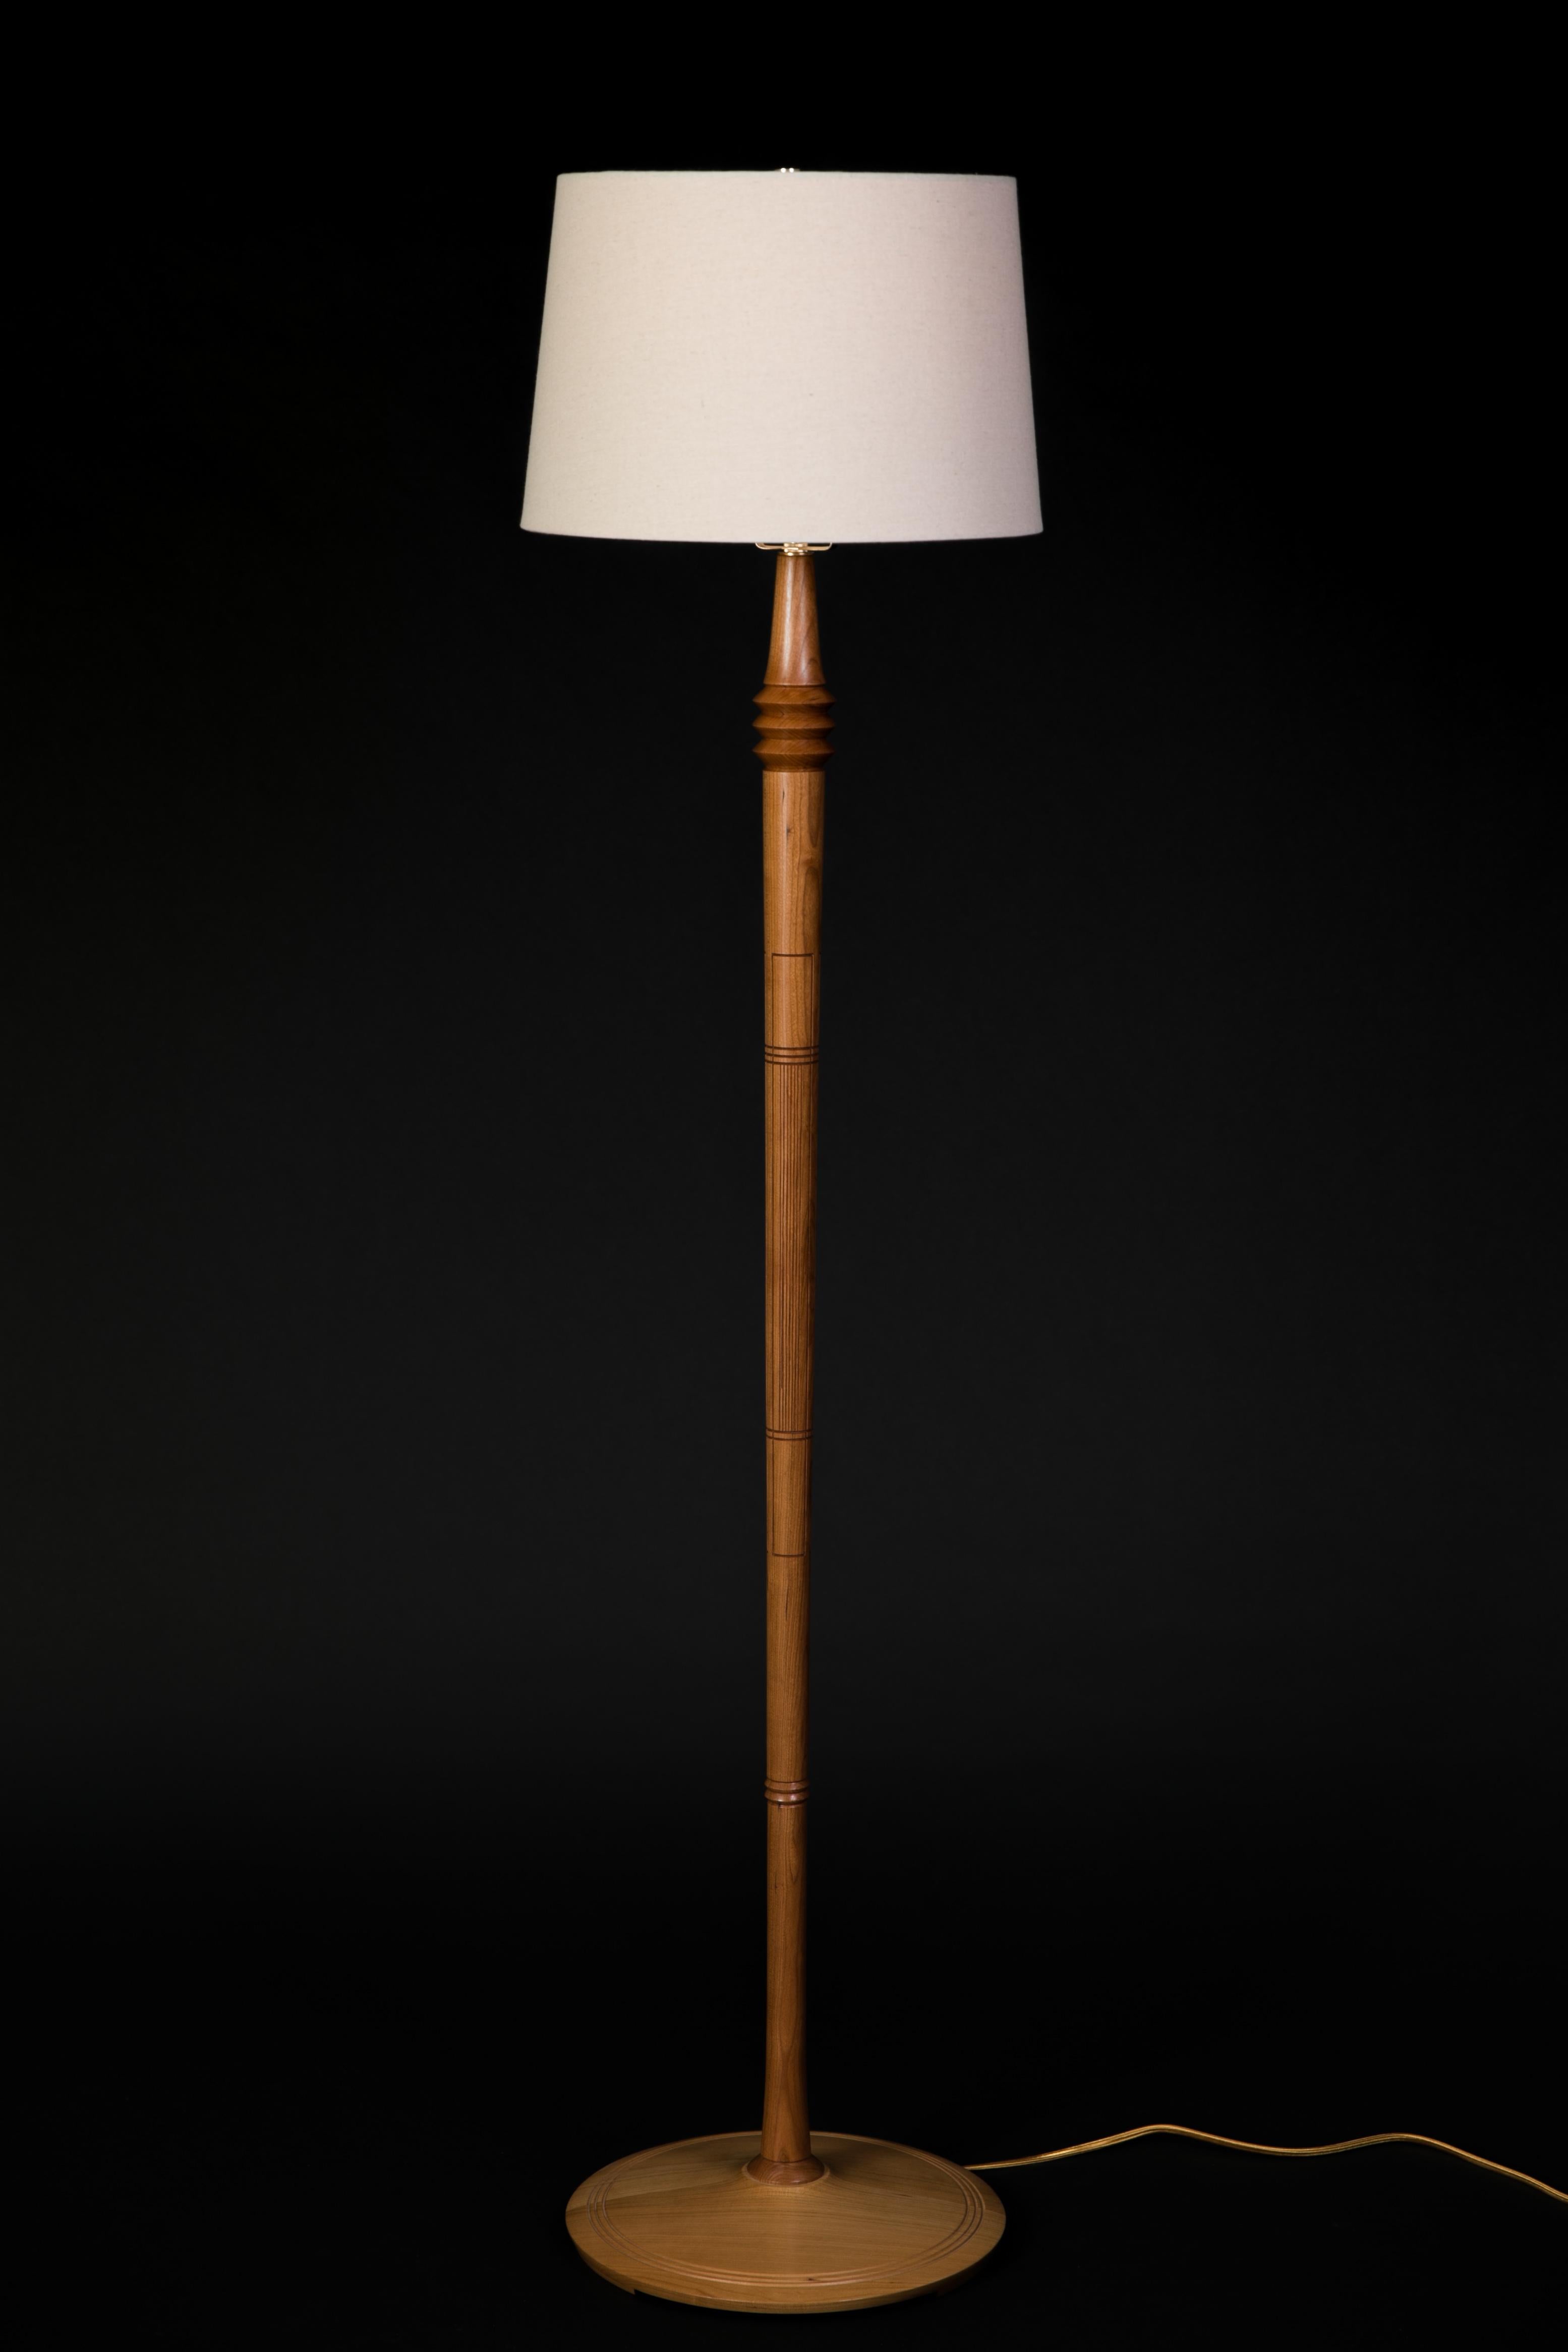 Partant d'une forme de base similaire à une autre lampe de ma collection, cette lampe comprend un travail de détail qui demande du temps et de la patience. Si la fonction de base d'une lampe est de fournir de la lumière, les détails de cette lampe